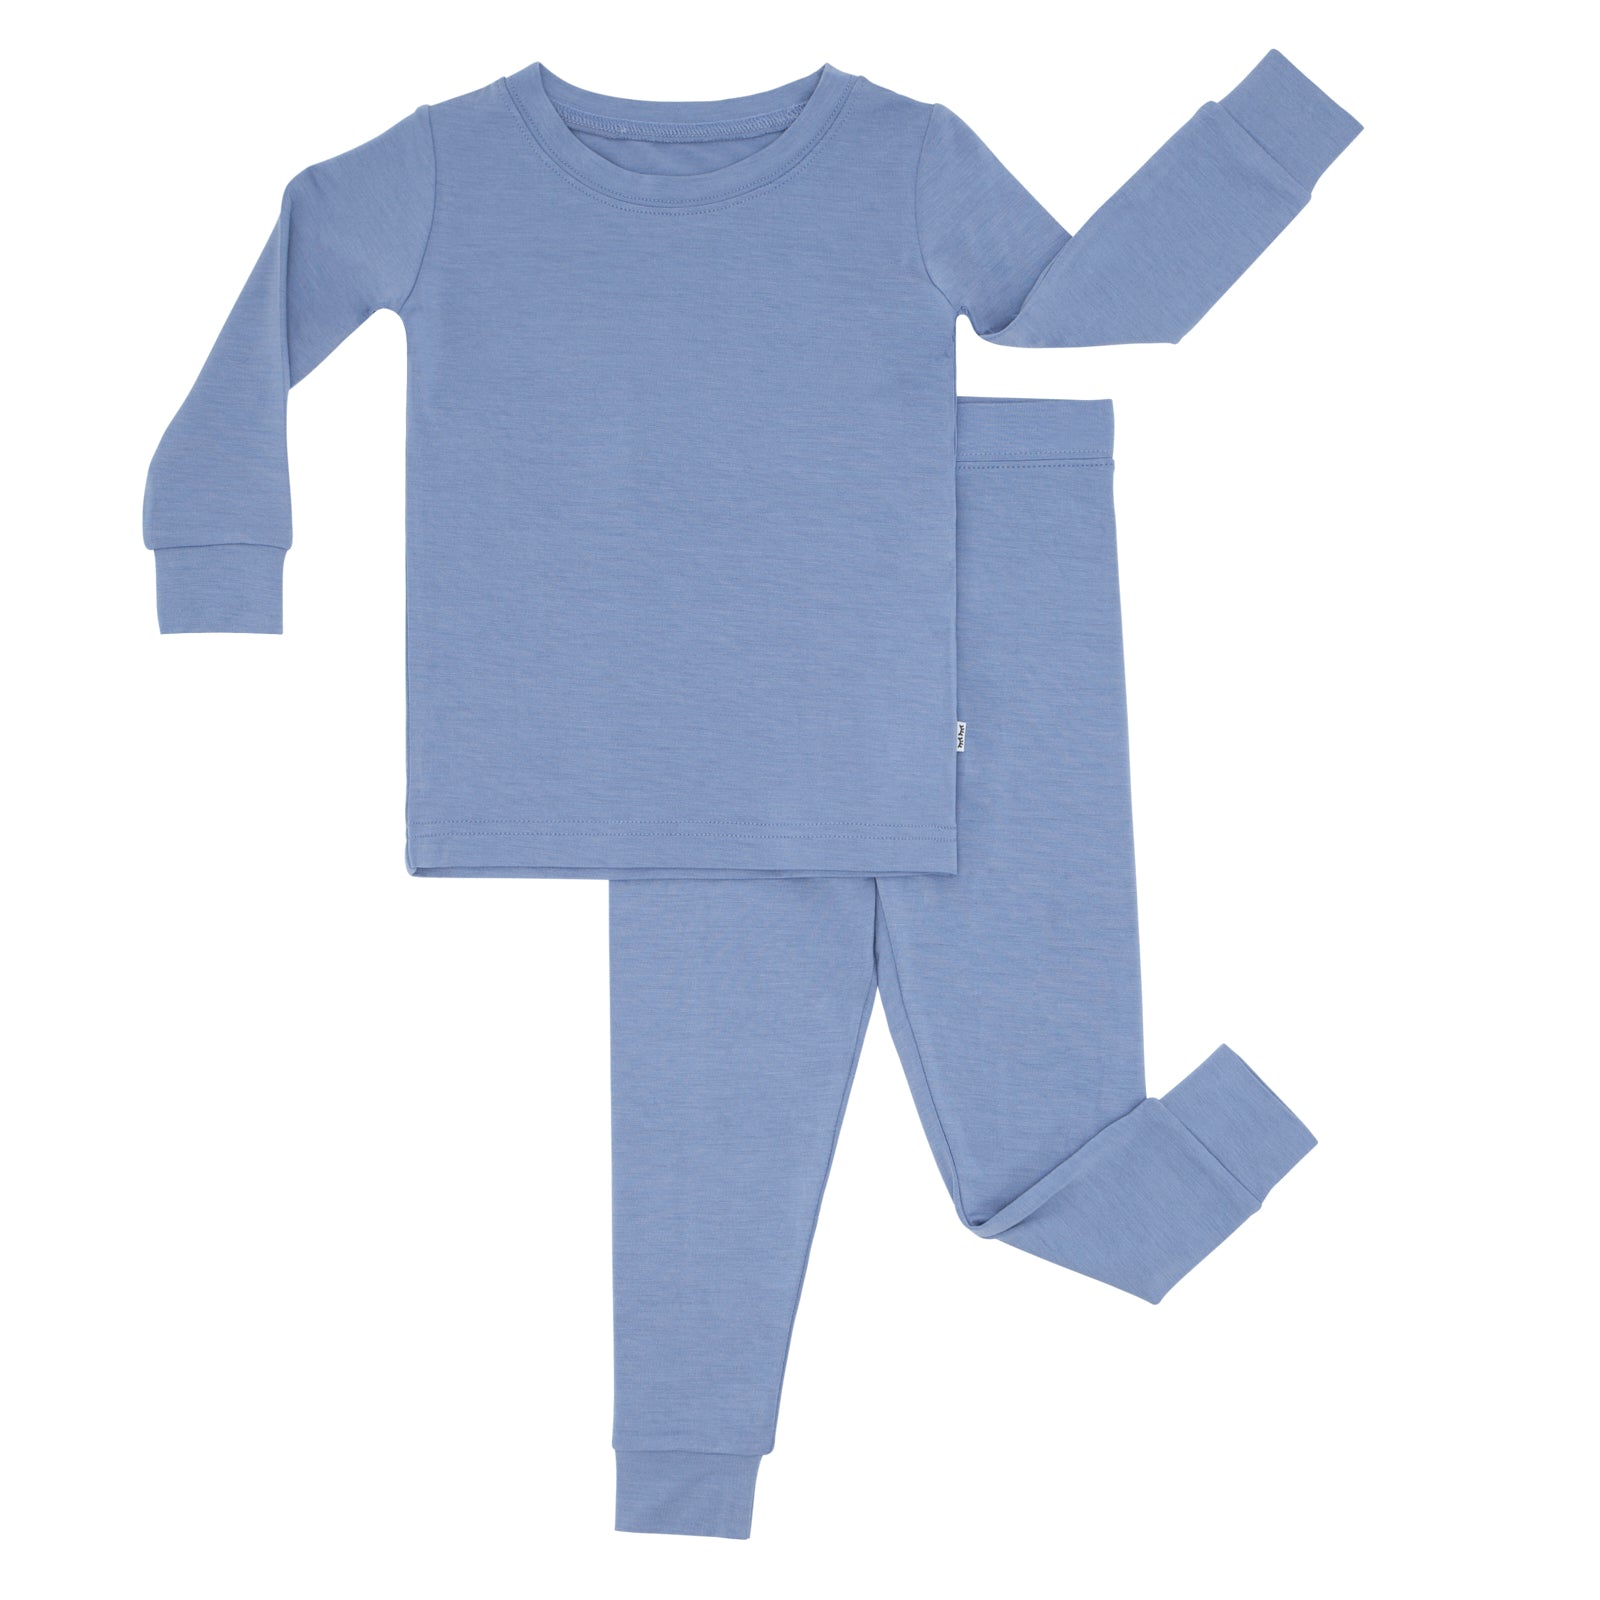 Flat lay image of a Slate Blue two piece pajama set